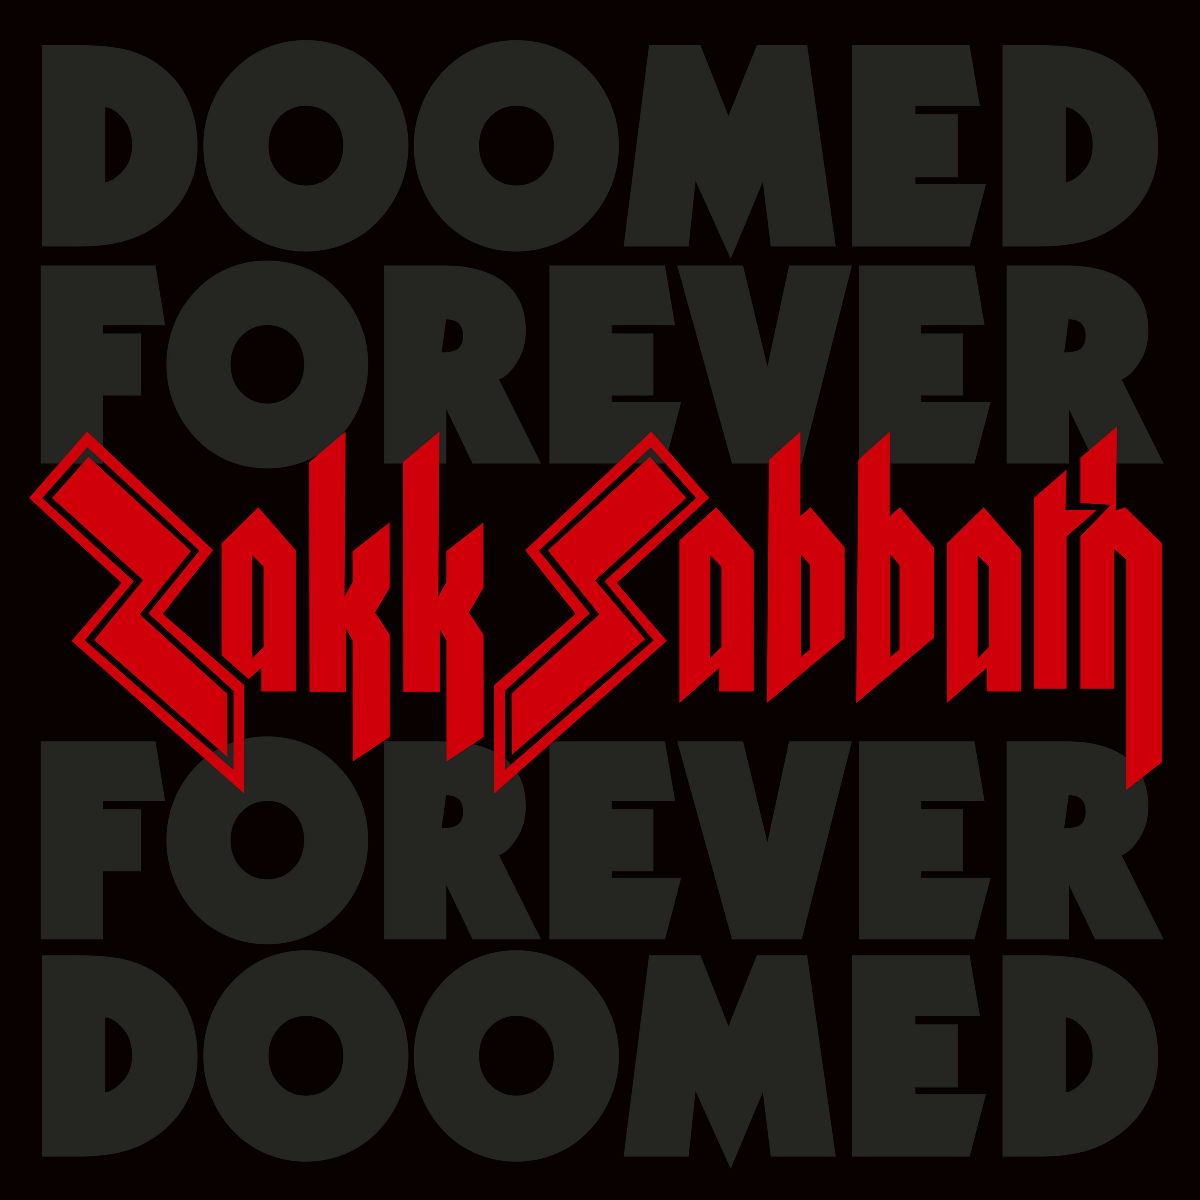 ZAKK SABBATH double album "Doomed Forever Forever Doomed" hits the charts!